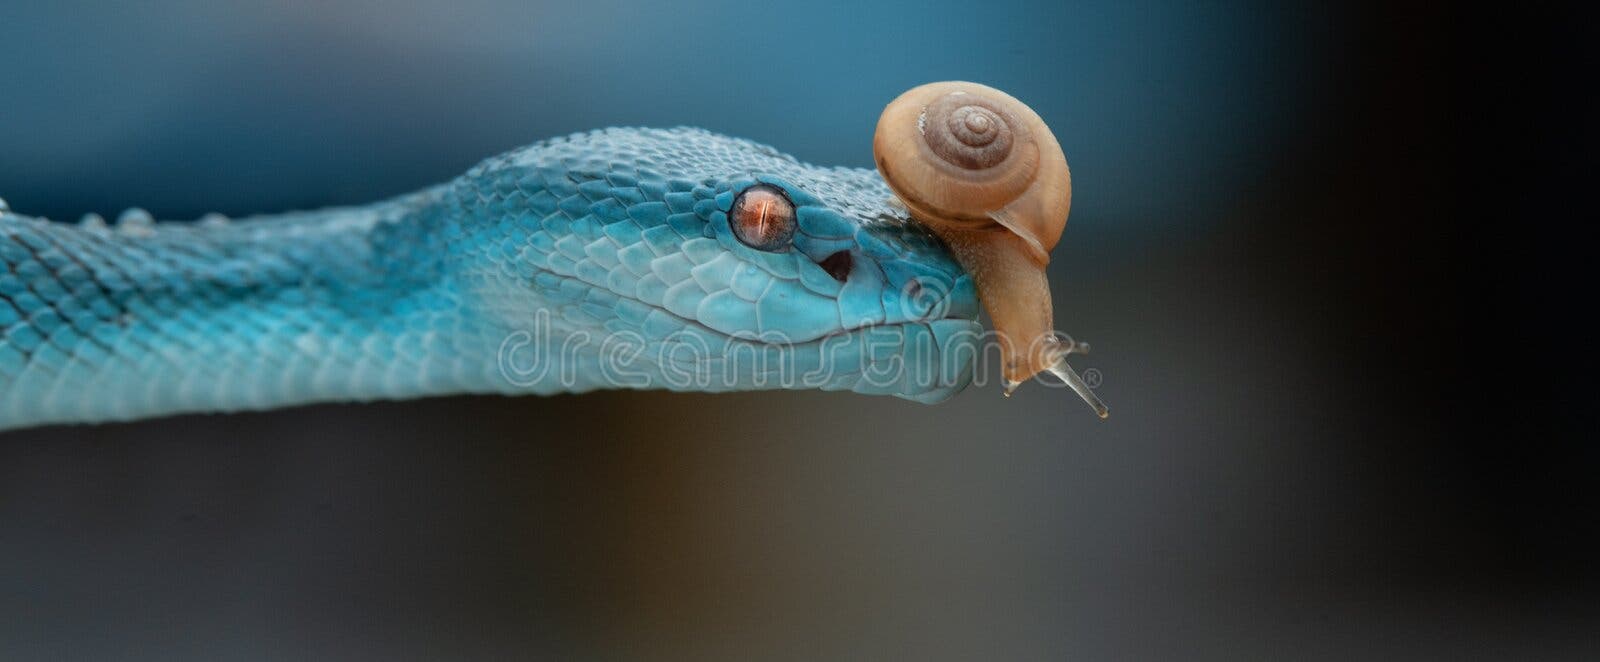 Linda Serpente Azul Brilhante Com Fundo Natural Foto de Stock